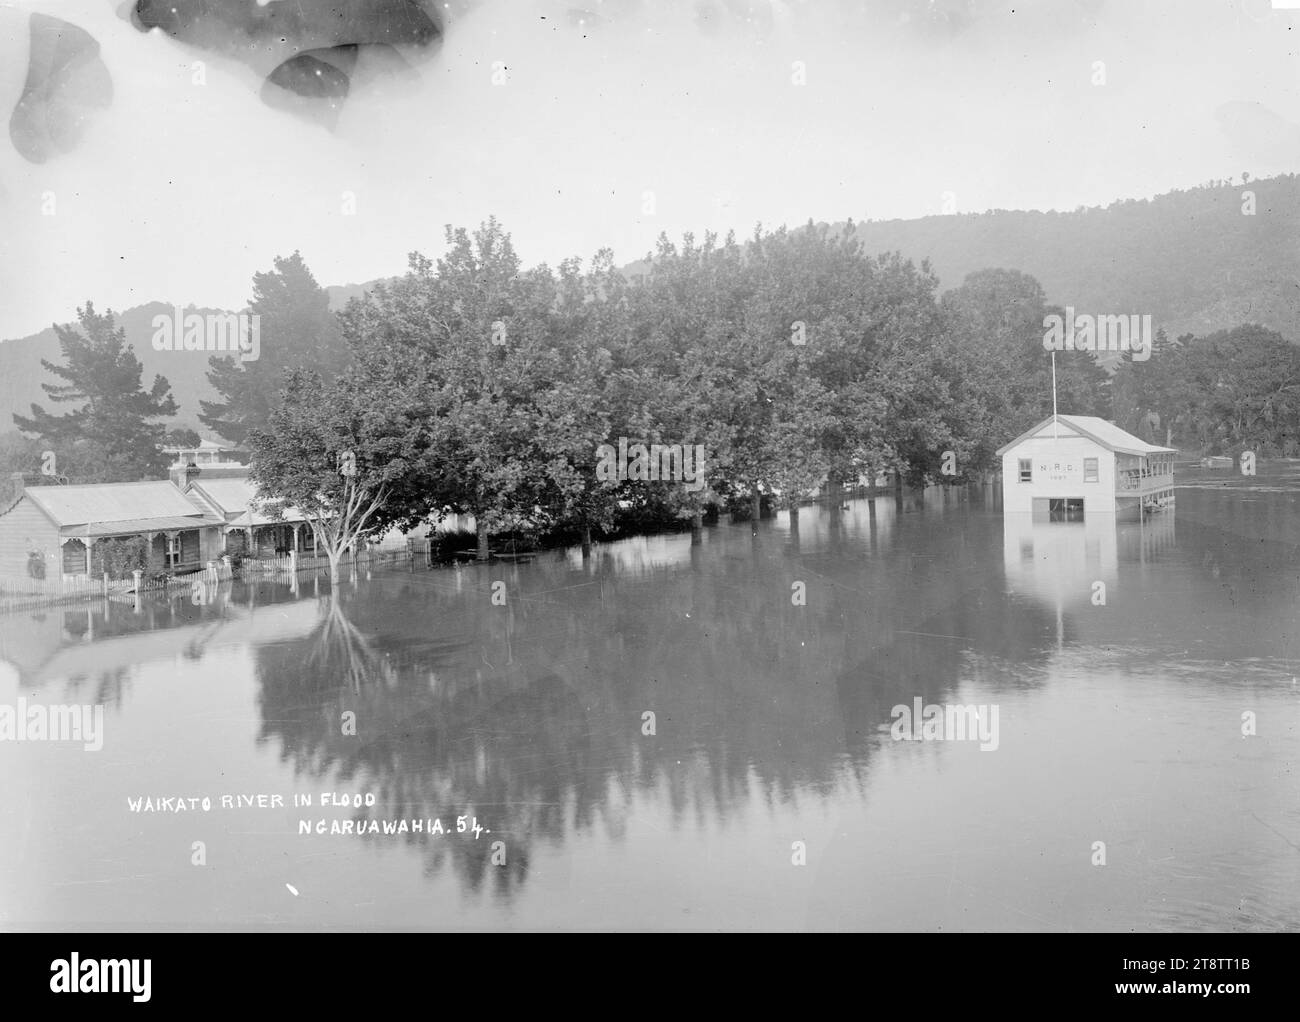 Rivière Waikato en inondation, à Ngaruawahia, Nouvelle-Zélande, vers 1910, vue de la rivière Waikato en inondation le long de l'esplanade Waikato, avec des maisons visibles derrière une rangée d'arbres, et le Ngaruawahia, New Zealand Rowing Club bâtiment partiellement inondé Banque D'Images